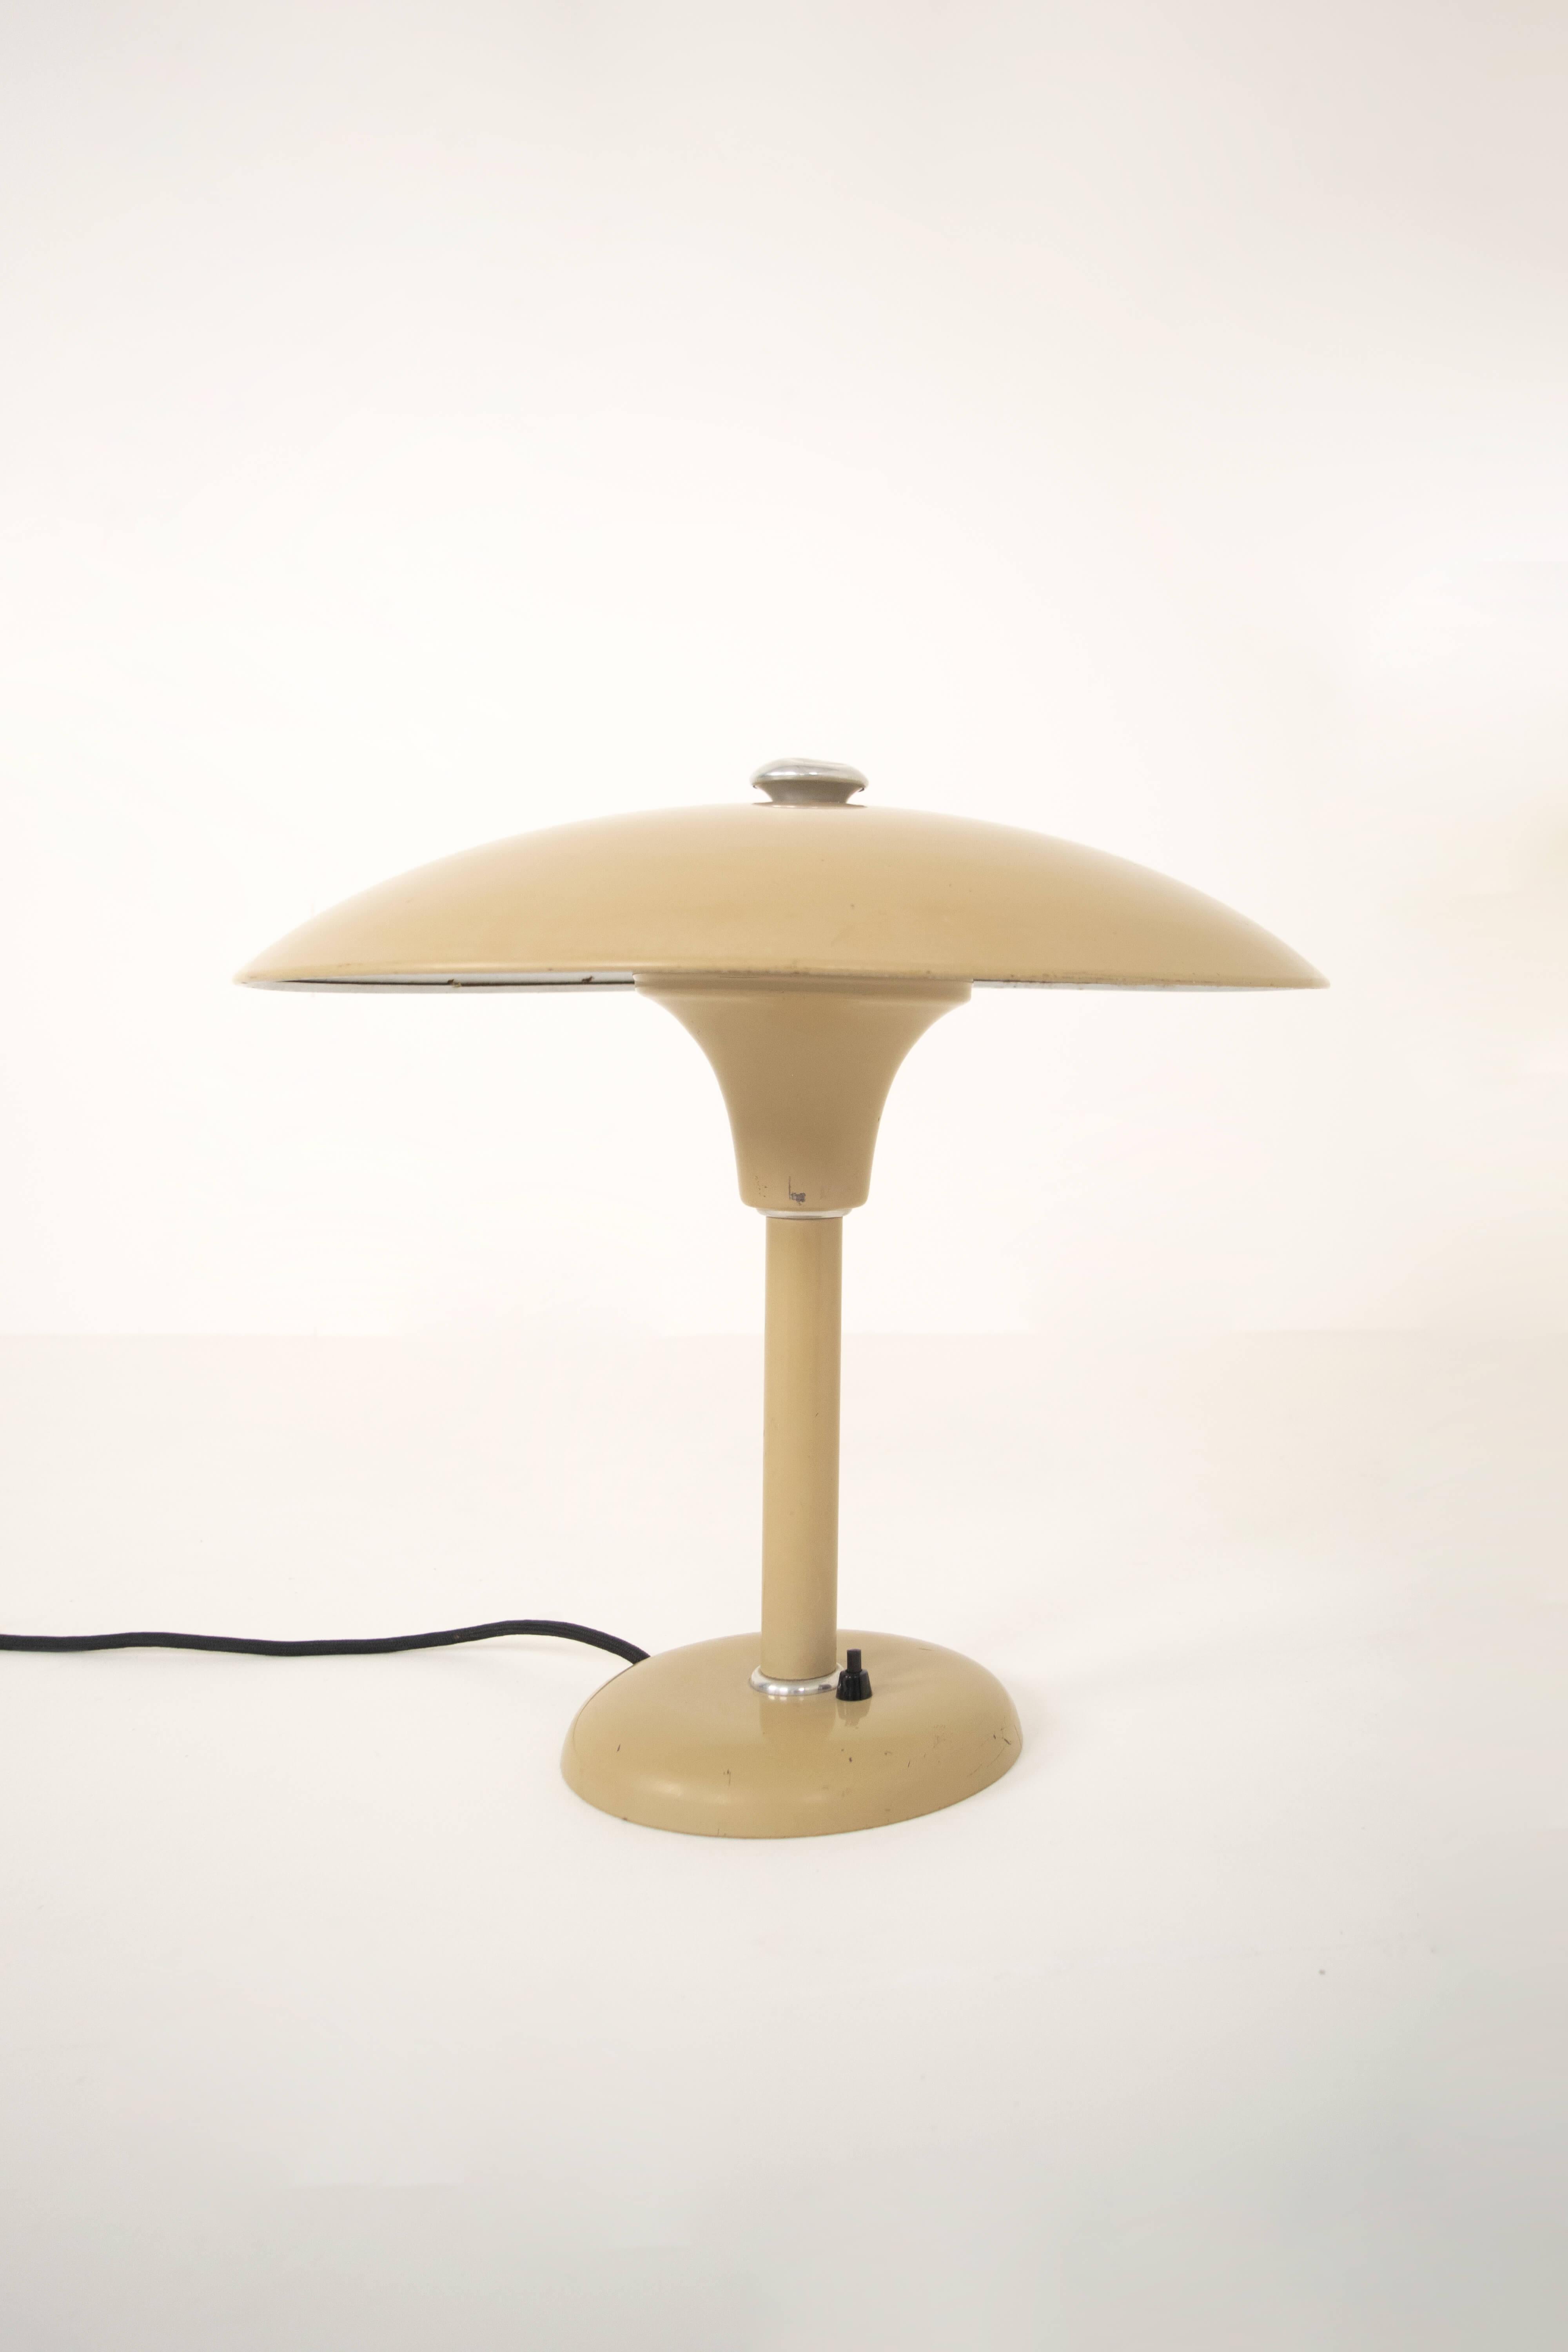 Schröder 2000 Tisch- oder Schreibtischleuchte von Max Schumacher aus Deutschland. Diese Leuchte wurde 1934 von Max Schumacher entworfen und von Werner Schröder in Lobenstein hergestellt. Diese Lampe ist wirklich im Bauhaus-Stil gehalten und hat ein